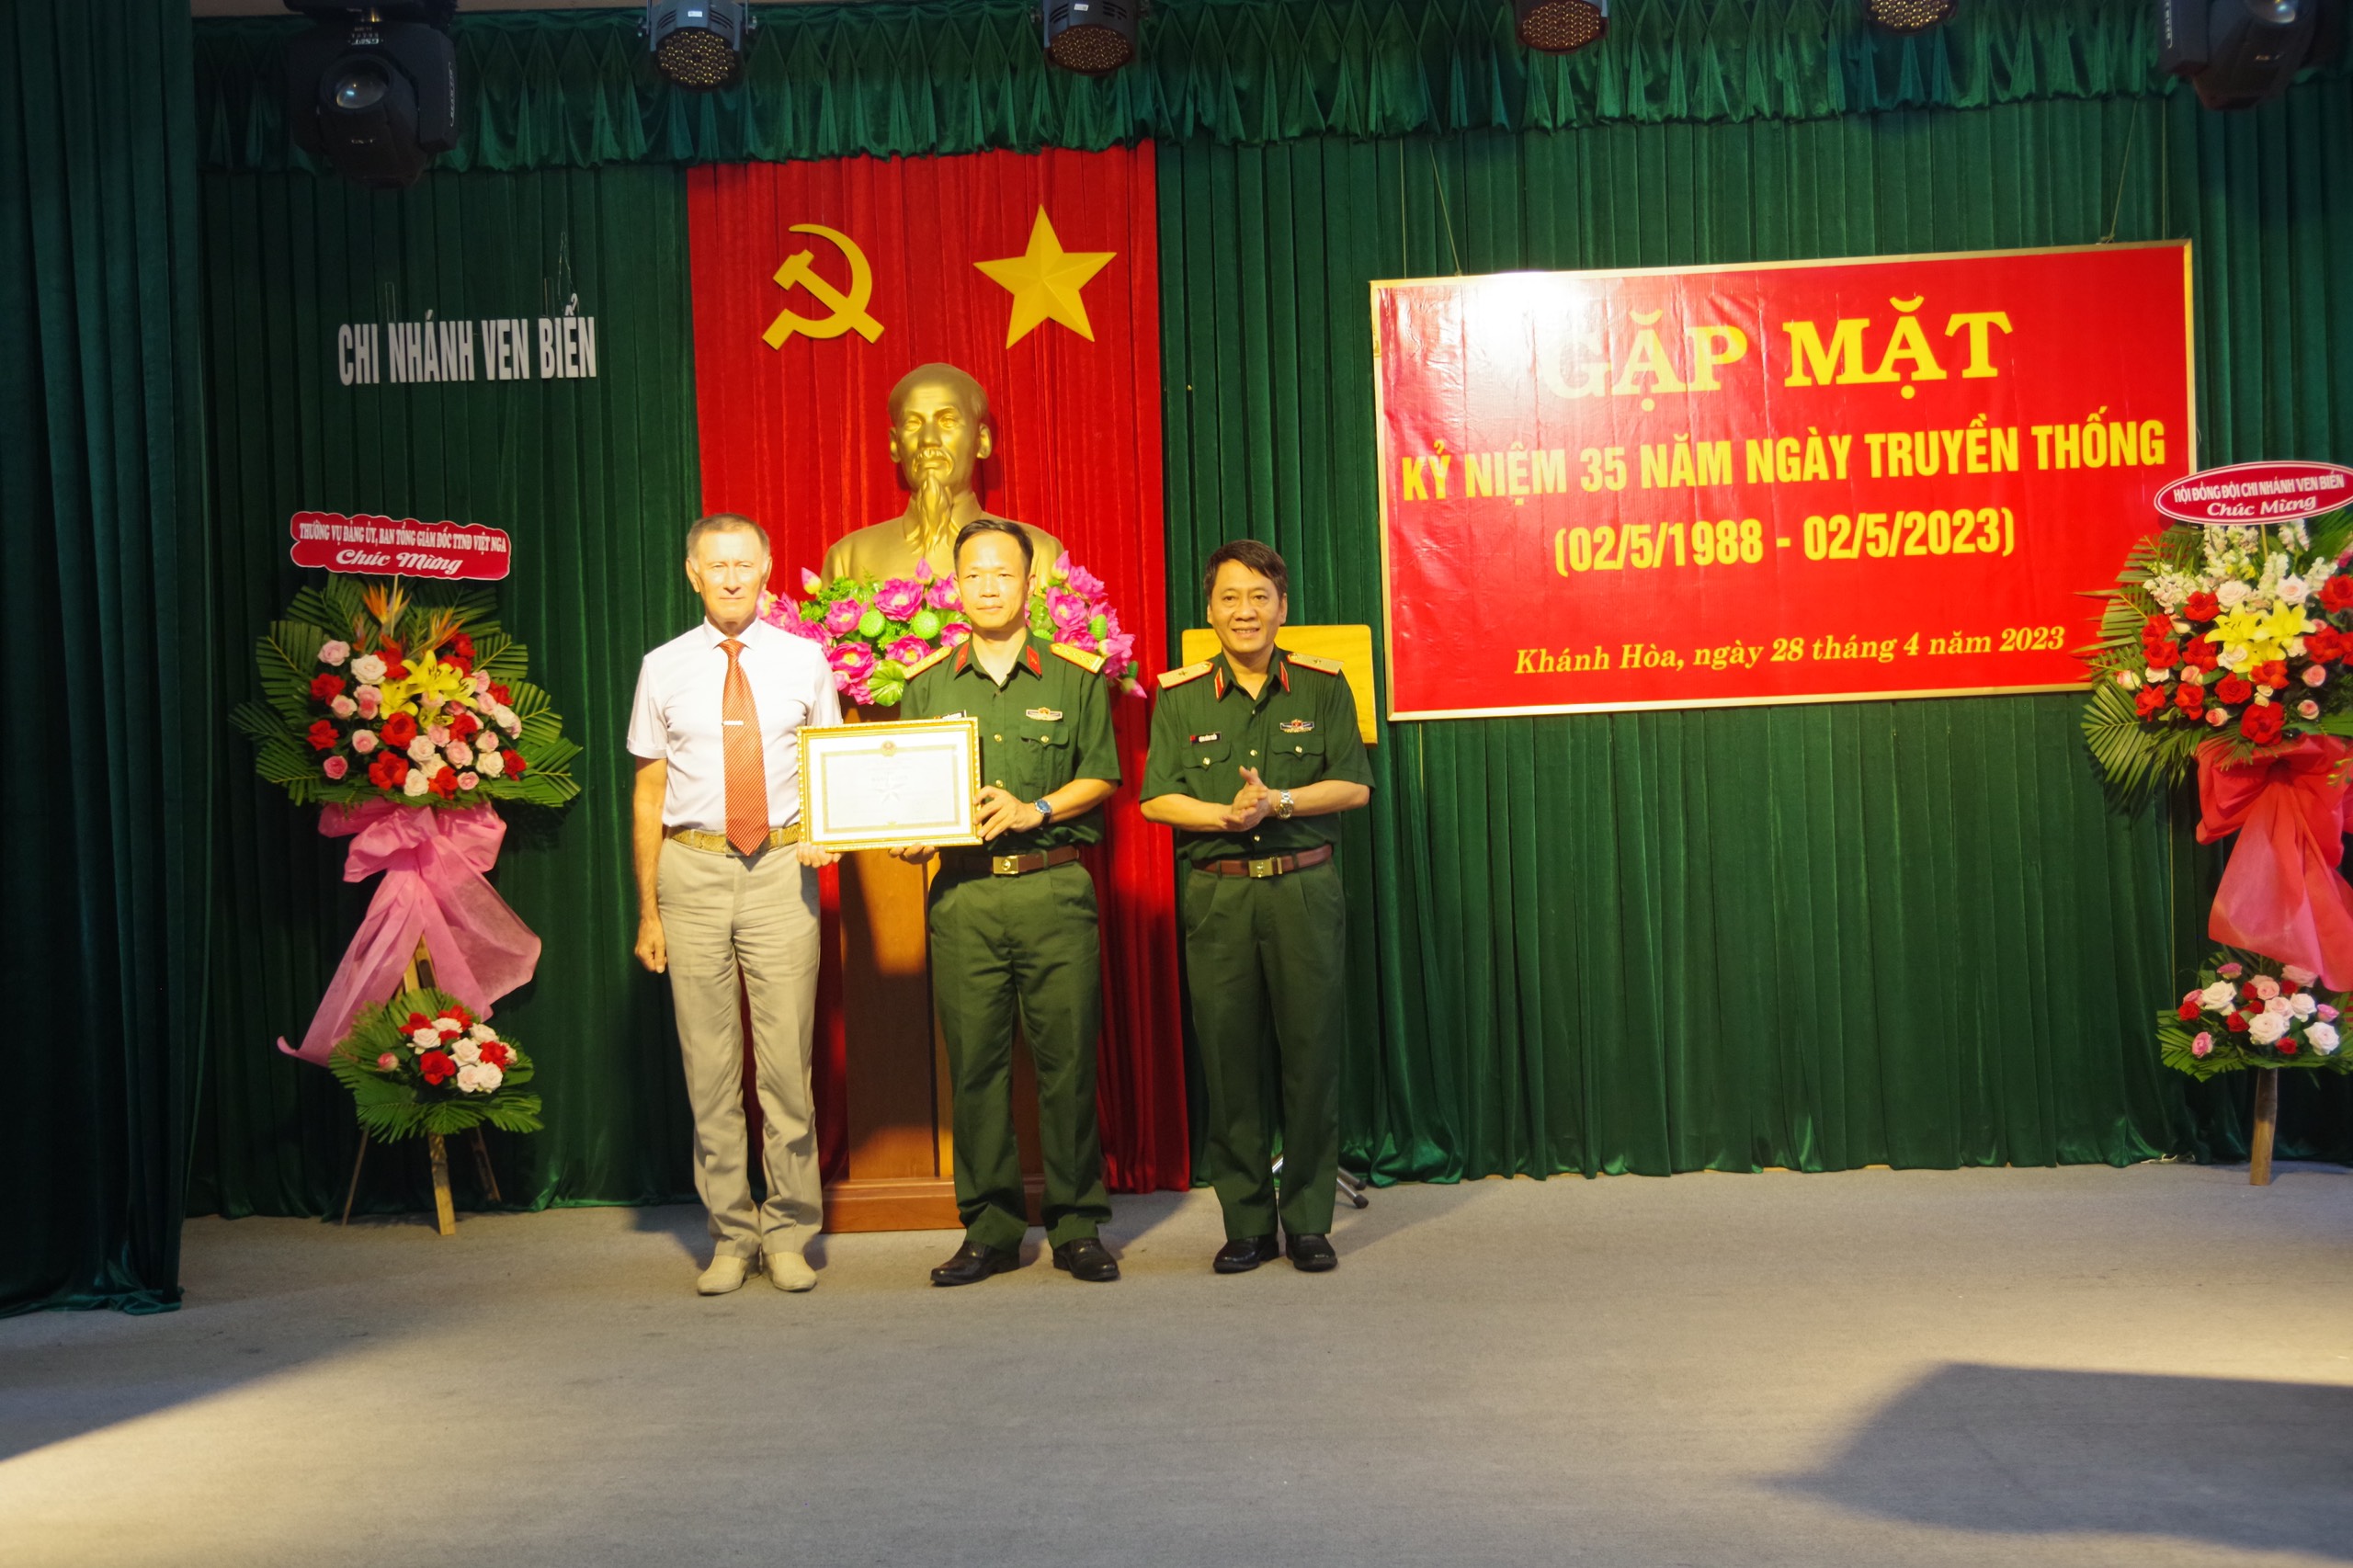 Chi nhánh Ven biển Trung tâm Nhiệt đới Việt - Nga tổ chức gặp mặt nhân dịp kỷ niệm 35 năm Ngày Truyền thống (02/5/1988 - 02/5/2023)